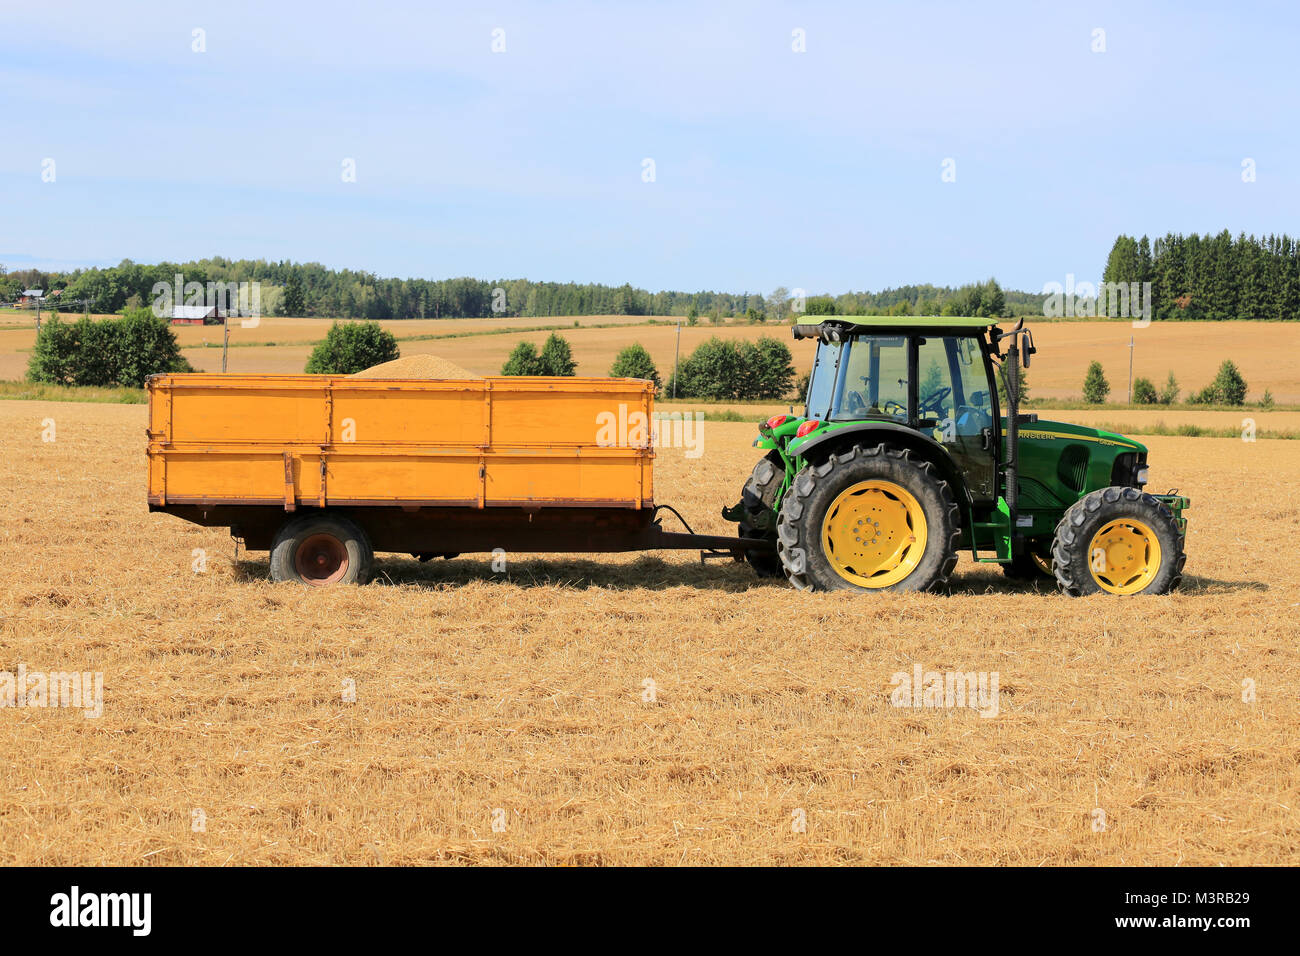 RAASEPORI, Finnland - 17. AUGUST 2014: John Deere 5820 Traktoren und Anhänger voller Korn auf Stoppeln Feld. John Deere 5820 wurde herstellen Stockfoto